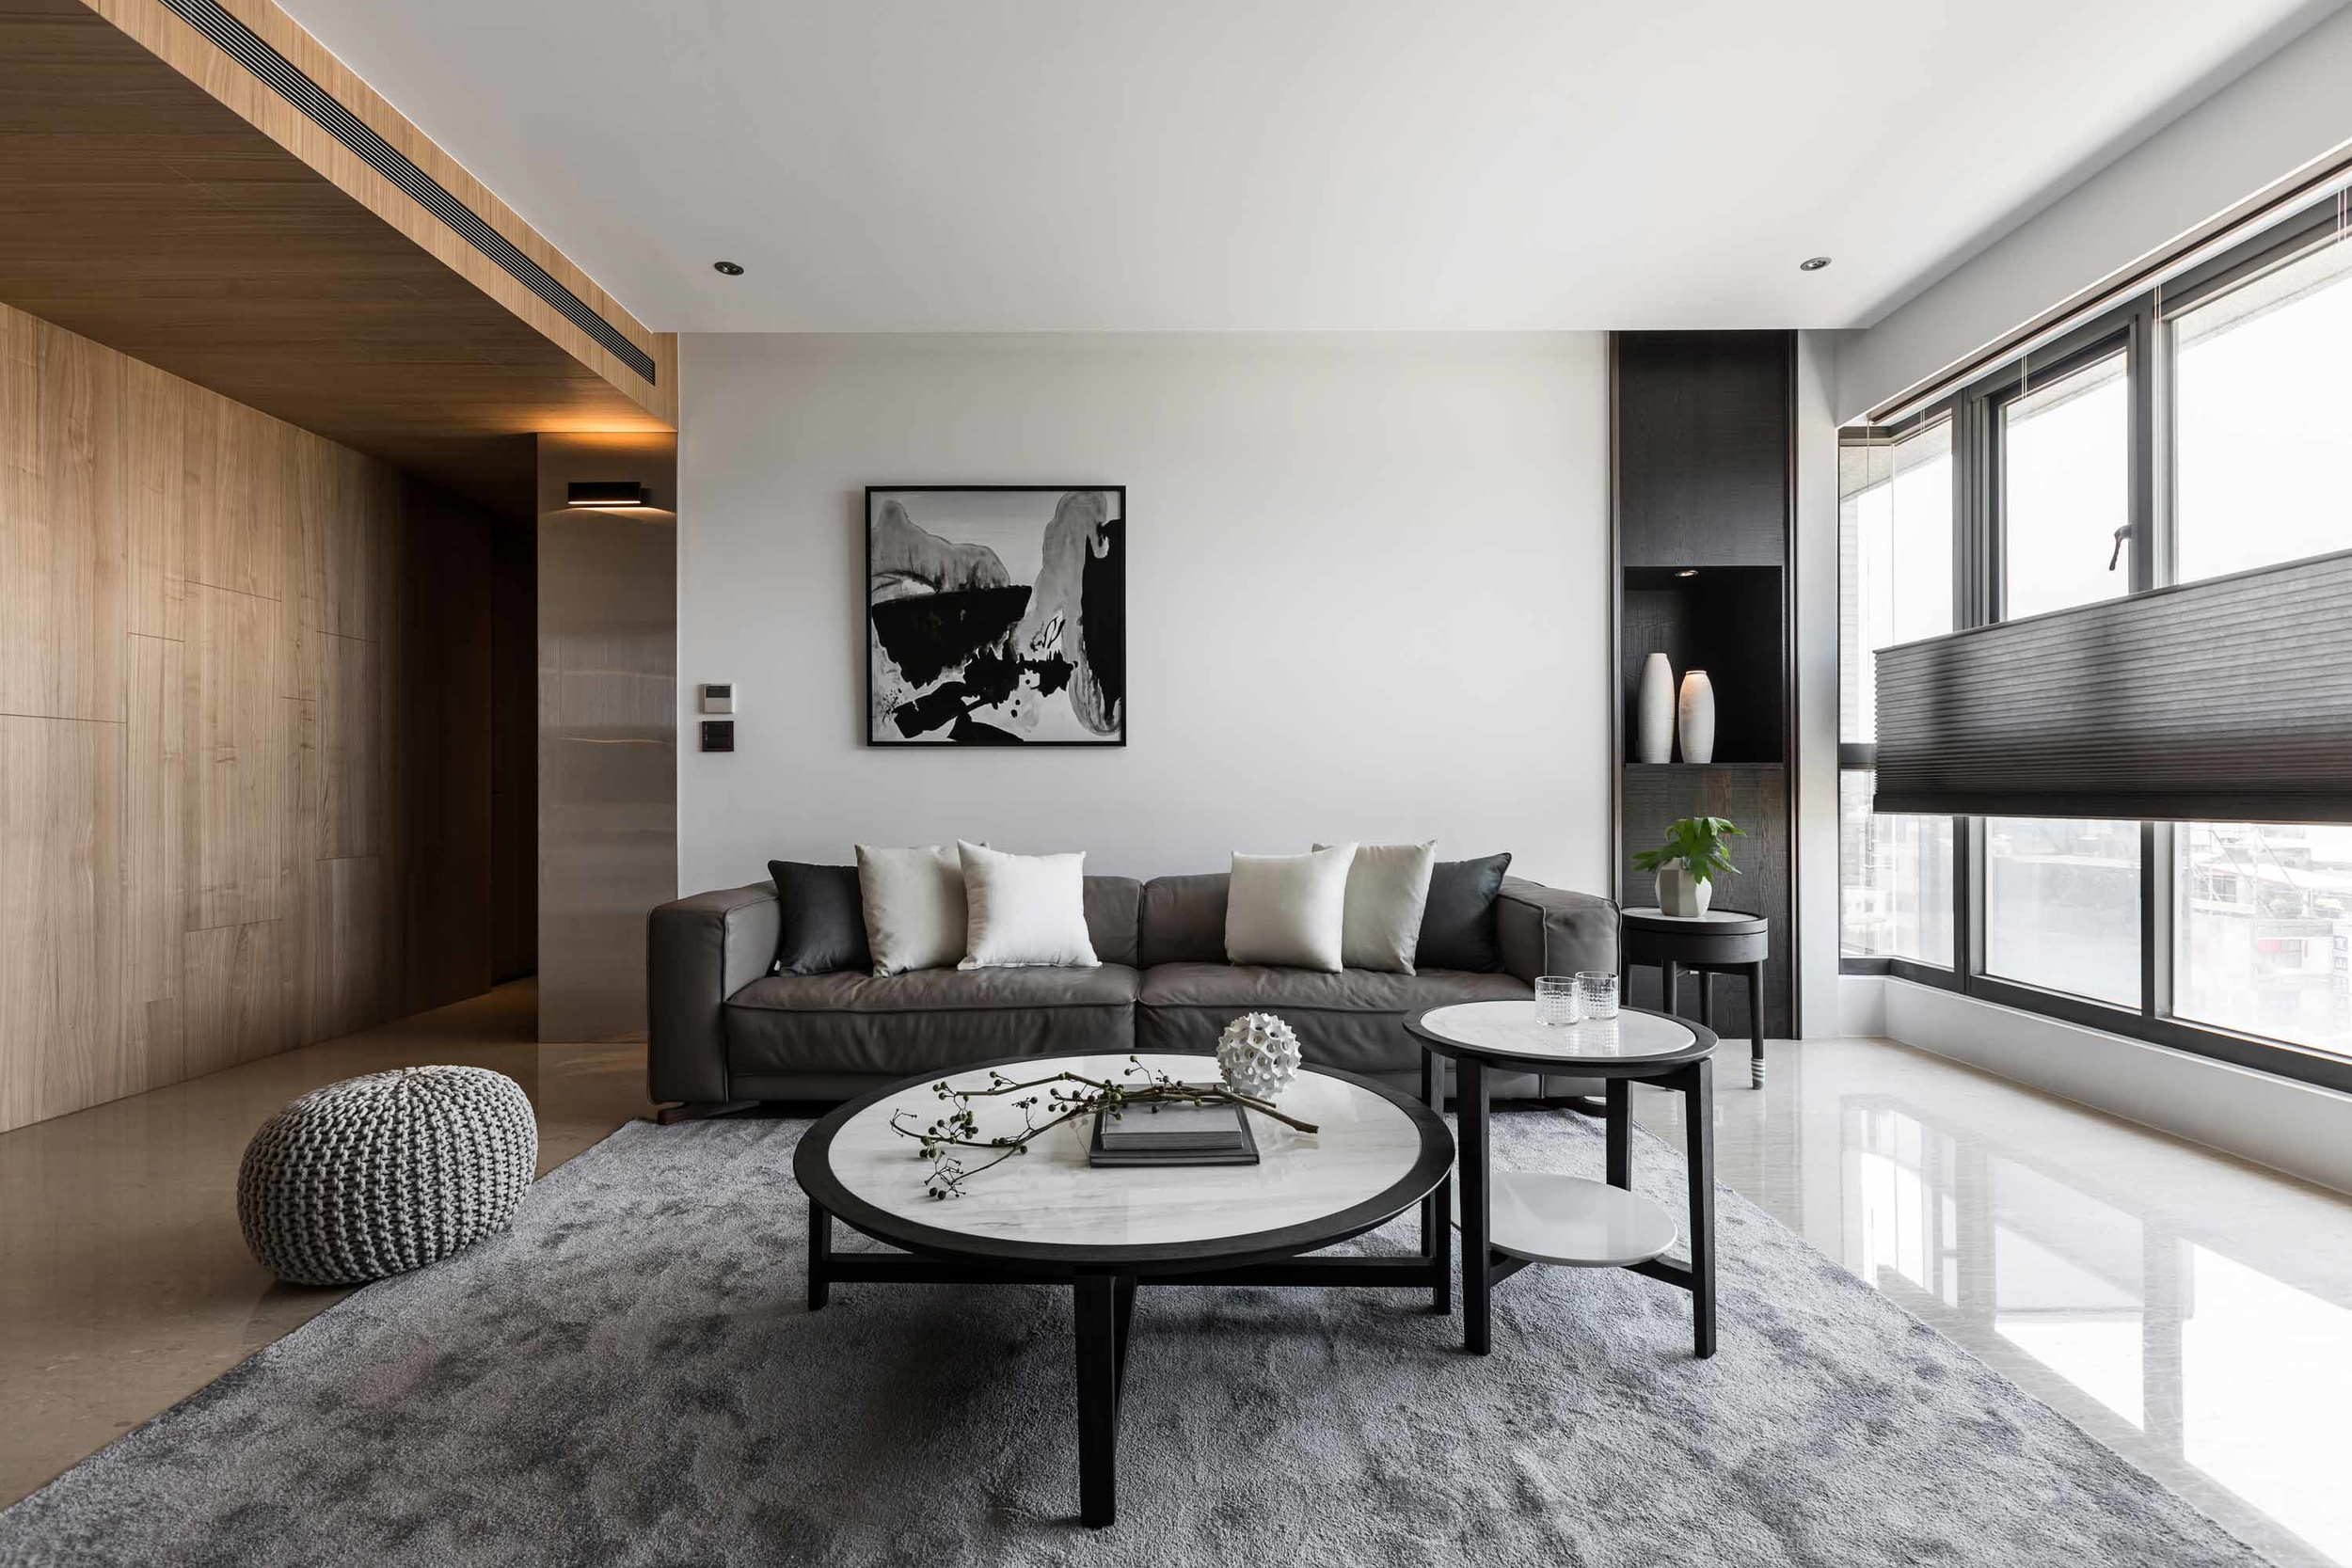 客厅主要以白色为主，沙发背景墙搭配装饰画线条造型，淡雅清新。